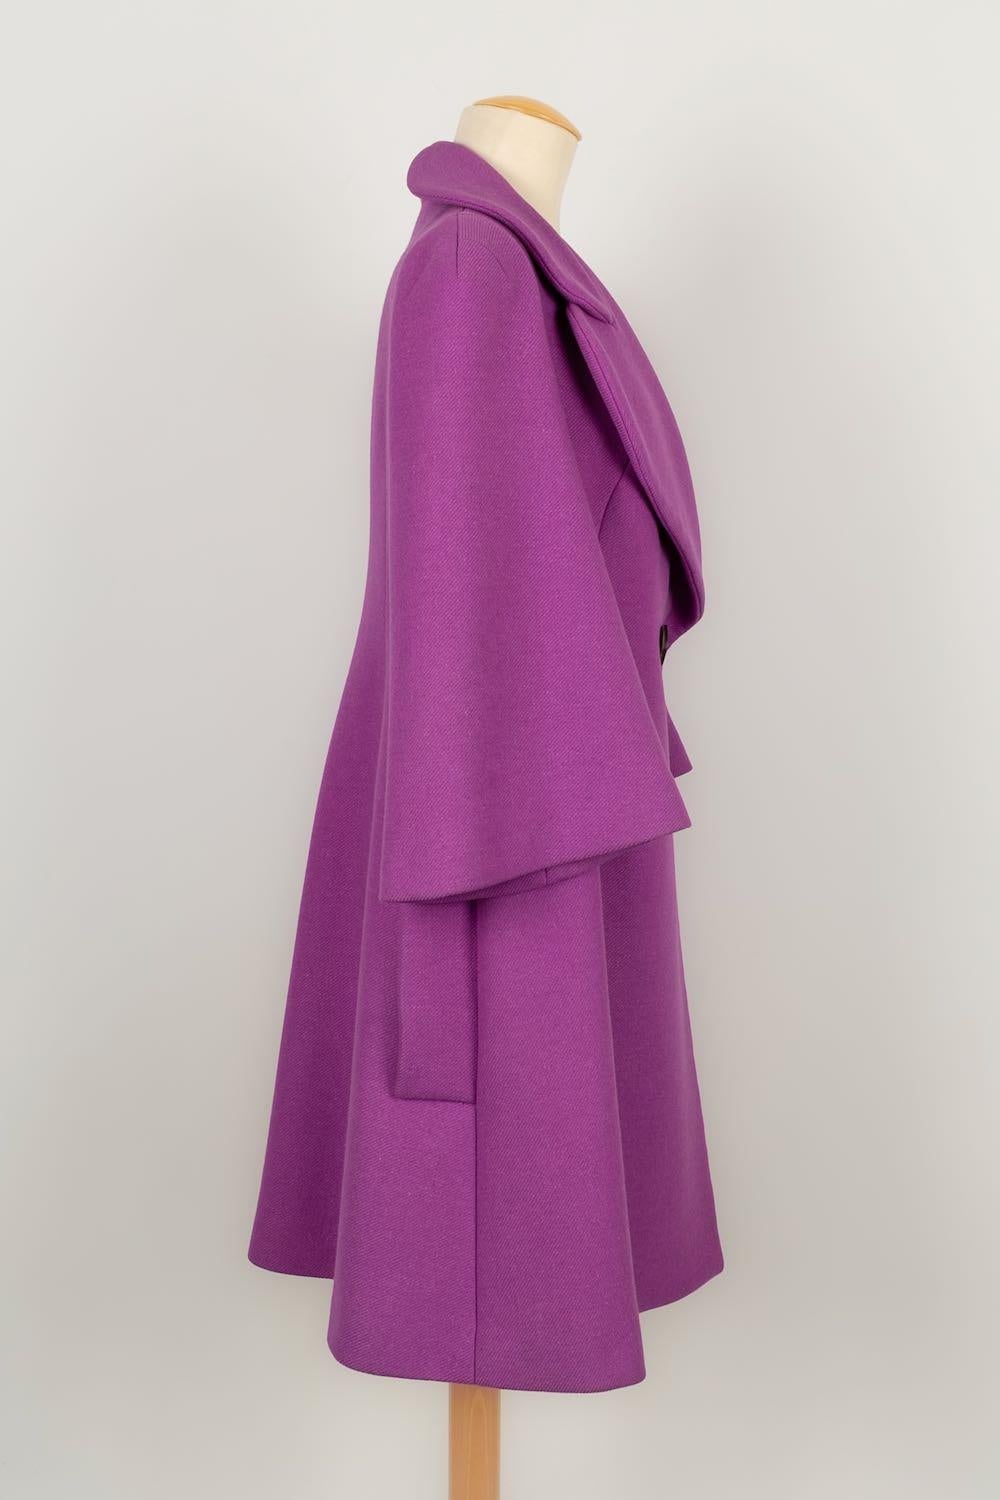 Women's Sonia Rykiel Wool Coat, Size 40FR